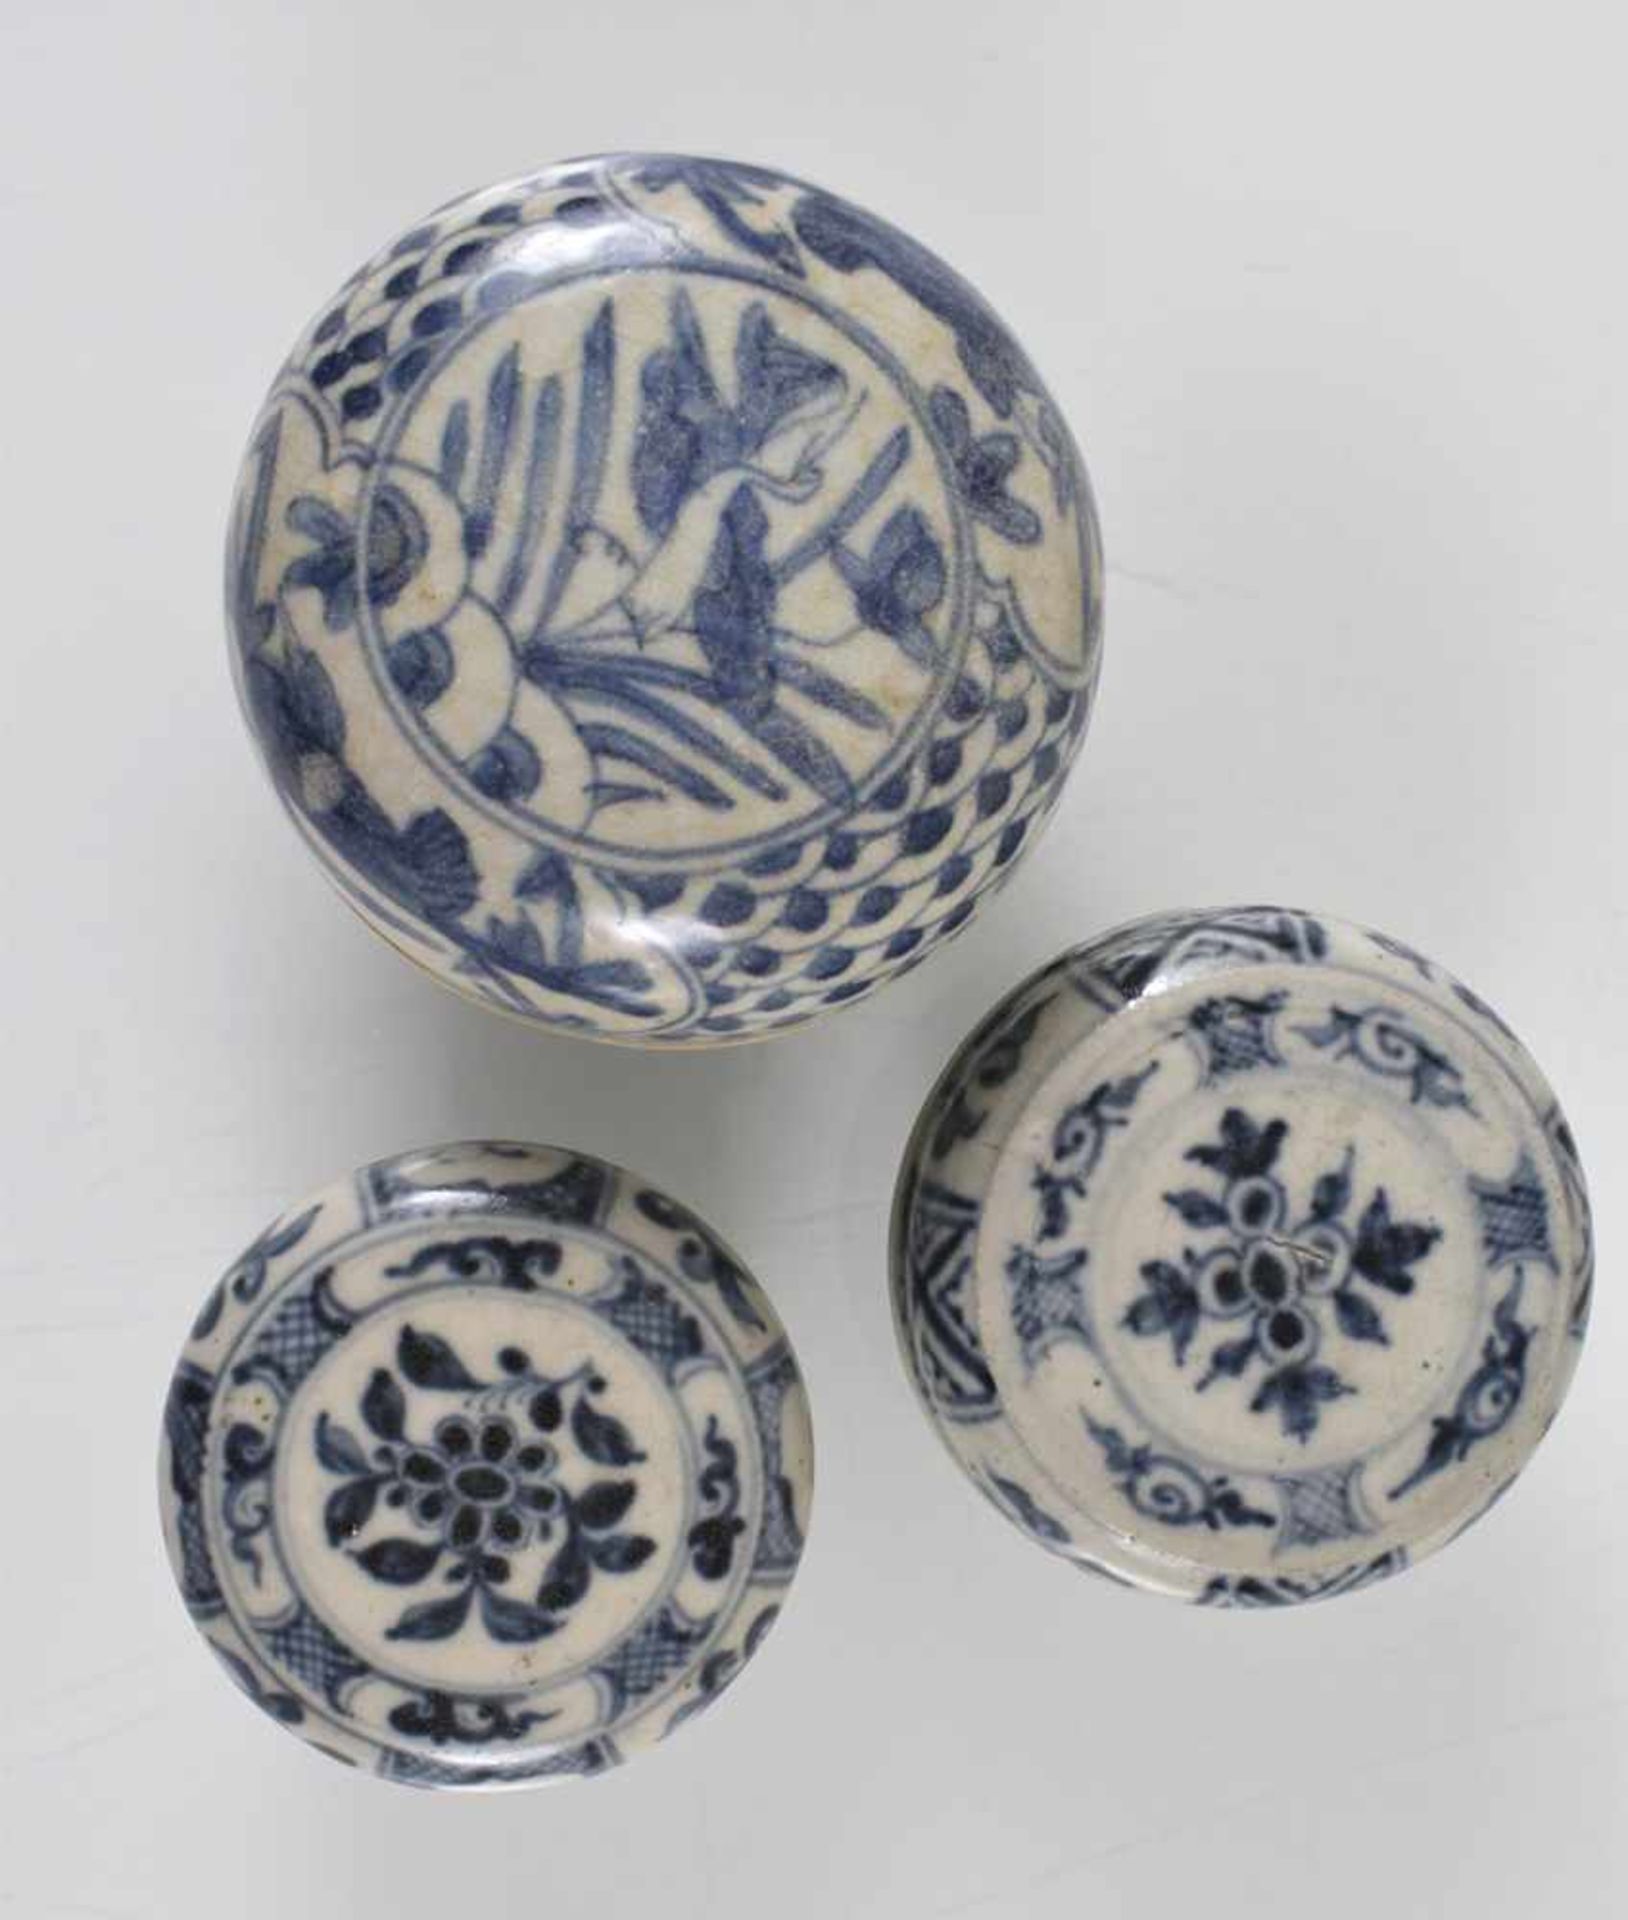 Acht Deckeldosen aus Porzellan mit blau-weißem Dekor - Bild 2 aus 3